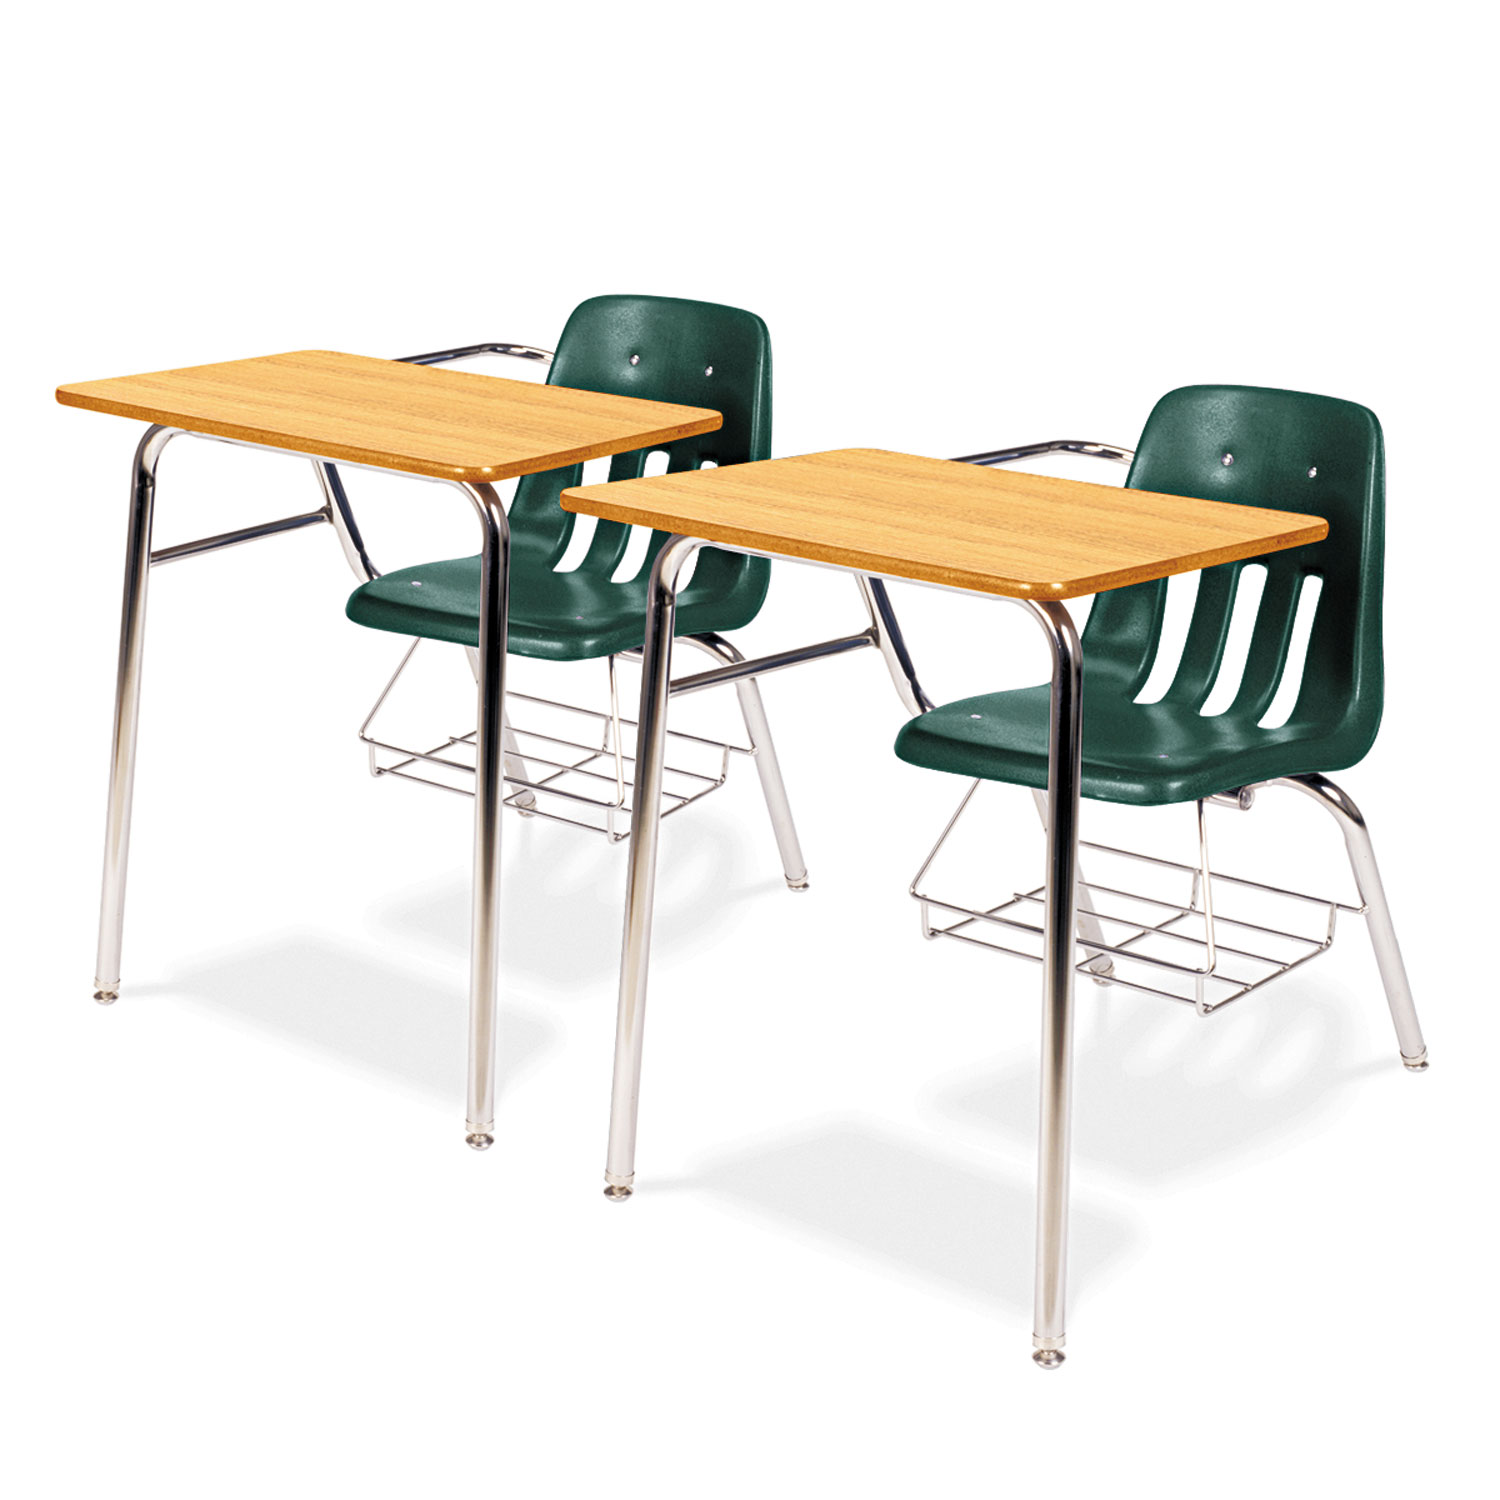 9400 Series Chair Desk, 21w x 33-1/2d x 30h, Medium Oak/Forest Green, 2/Carton